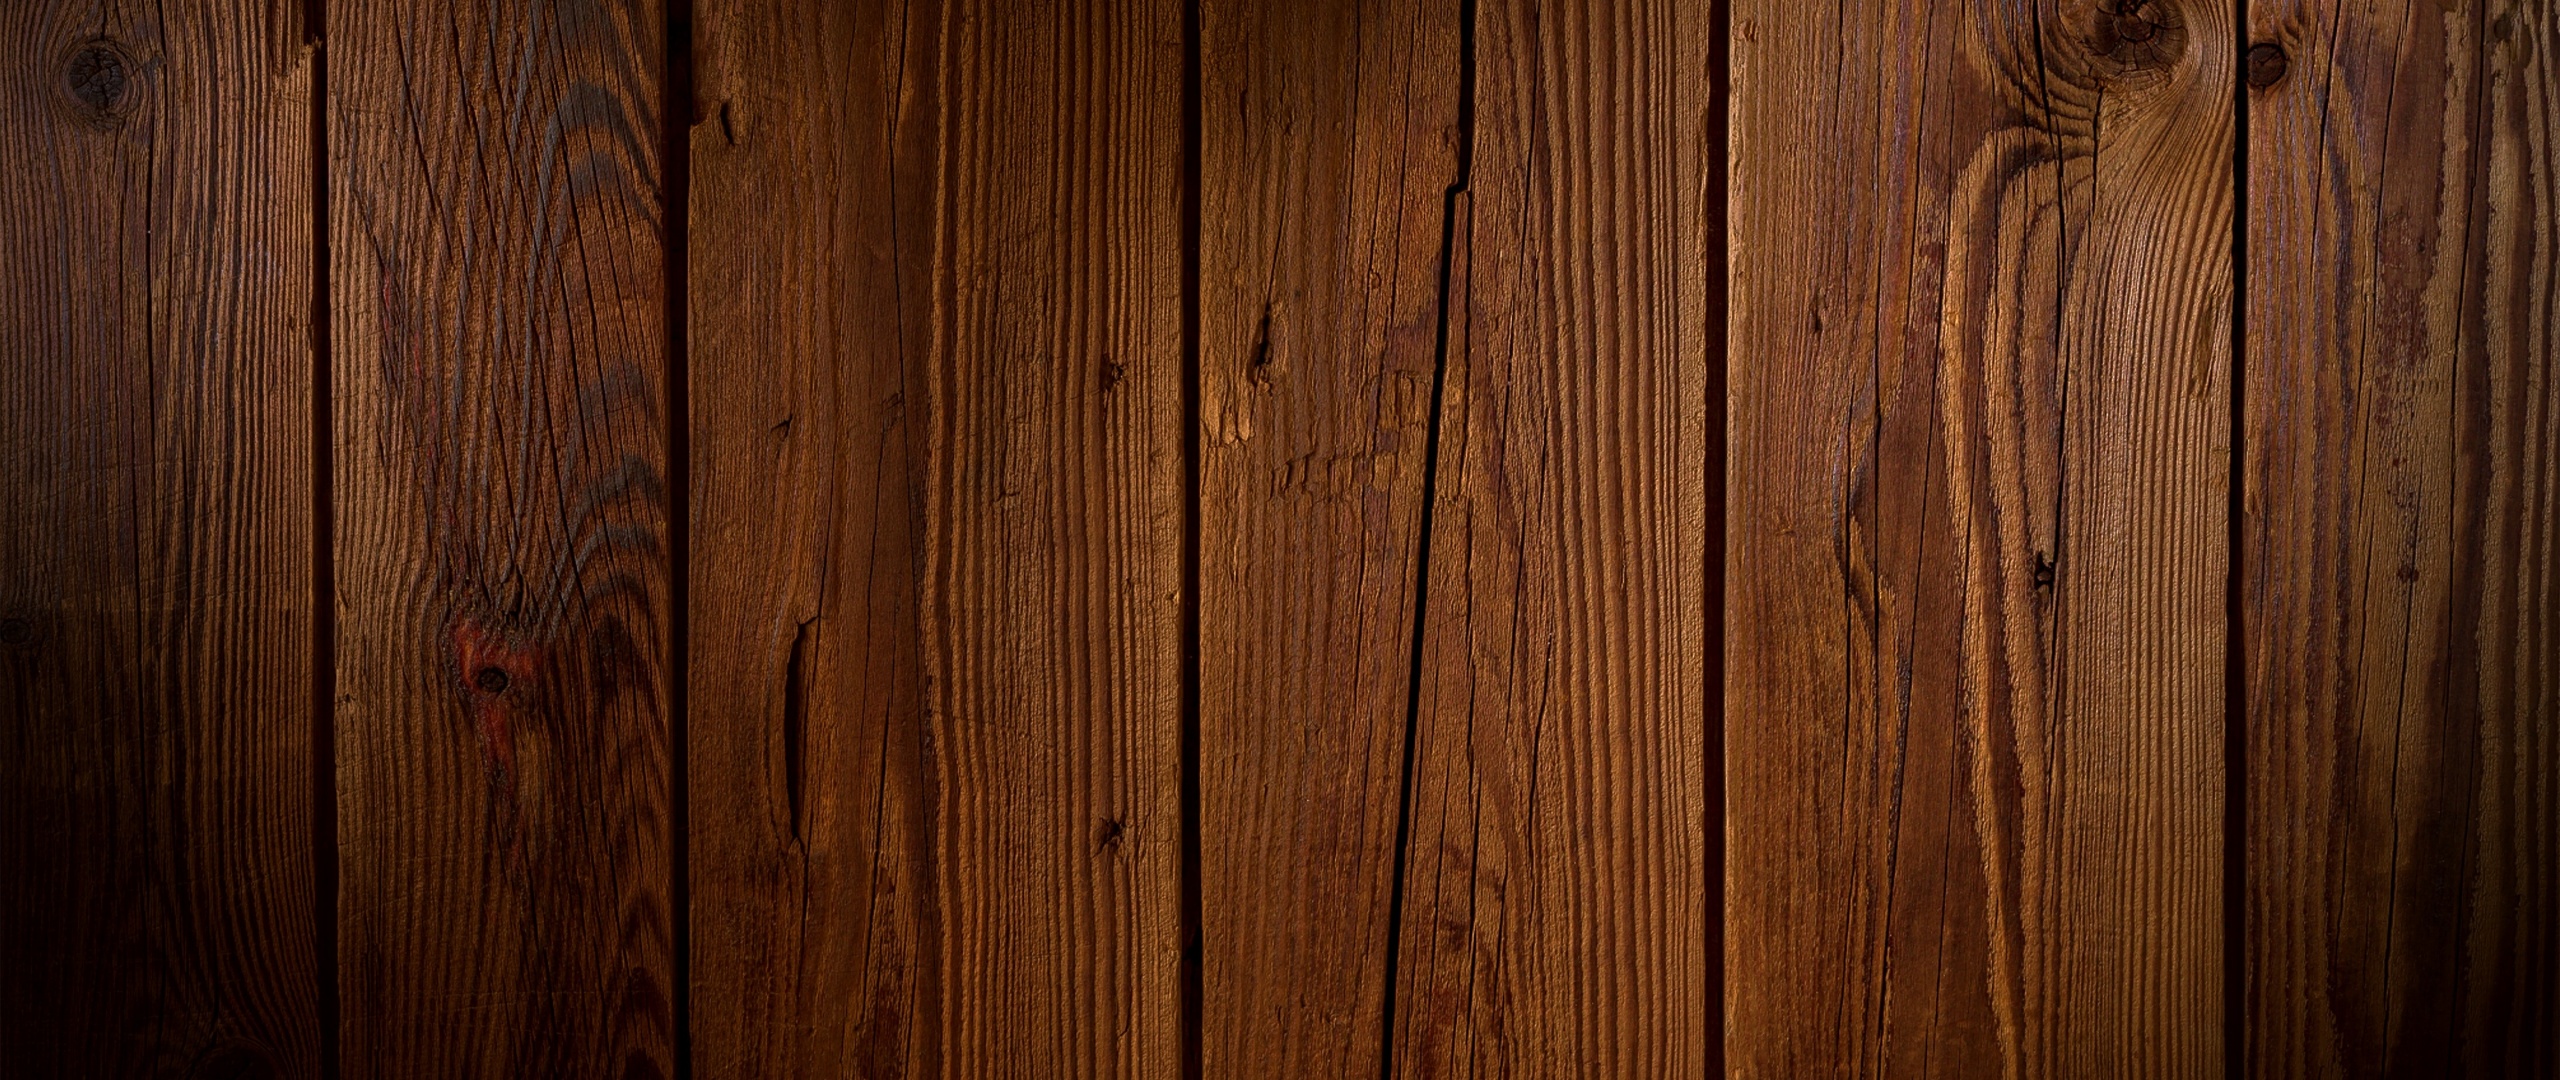 Chi tiết của dãy ván gỗ được khiến nổi bật trong bức ảnh này. Với chất liệu chắc chắn và bền đẹp, ván gỗ là lựa chọn hoàn hảo cho những người yêu thích thiết kế và nghệ thuật. Hãy xem ảnh để khám phá thêm nhiều tính năng của chúng!